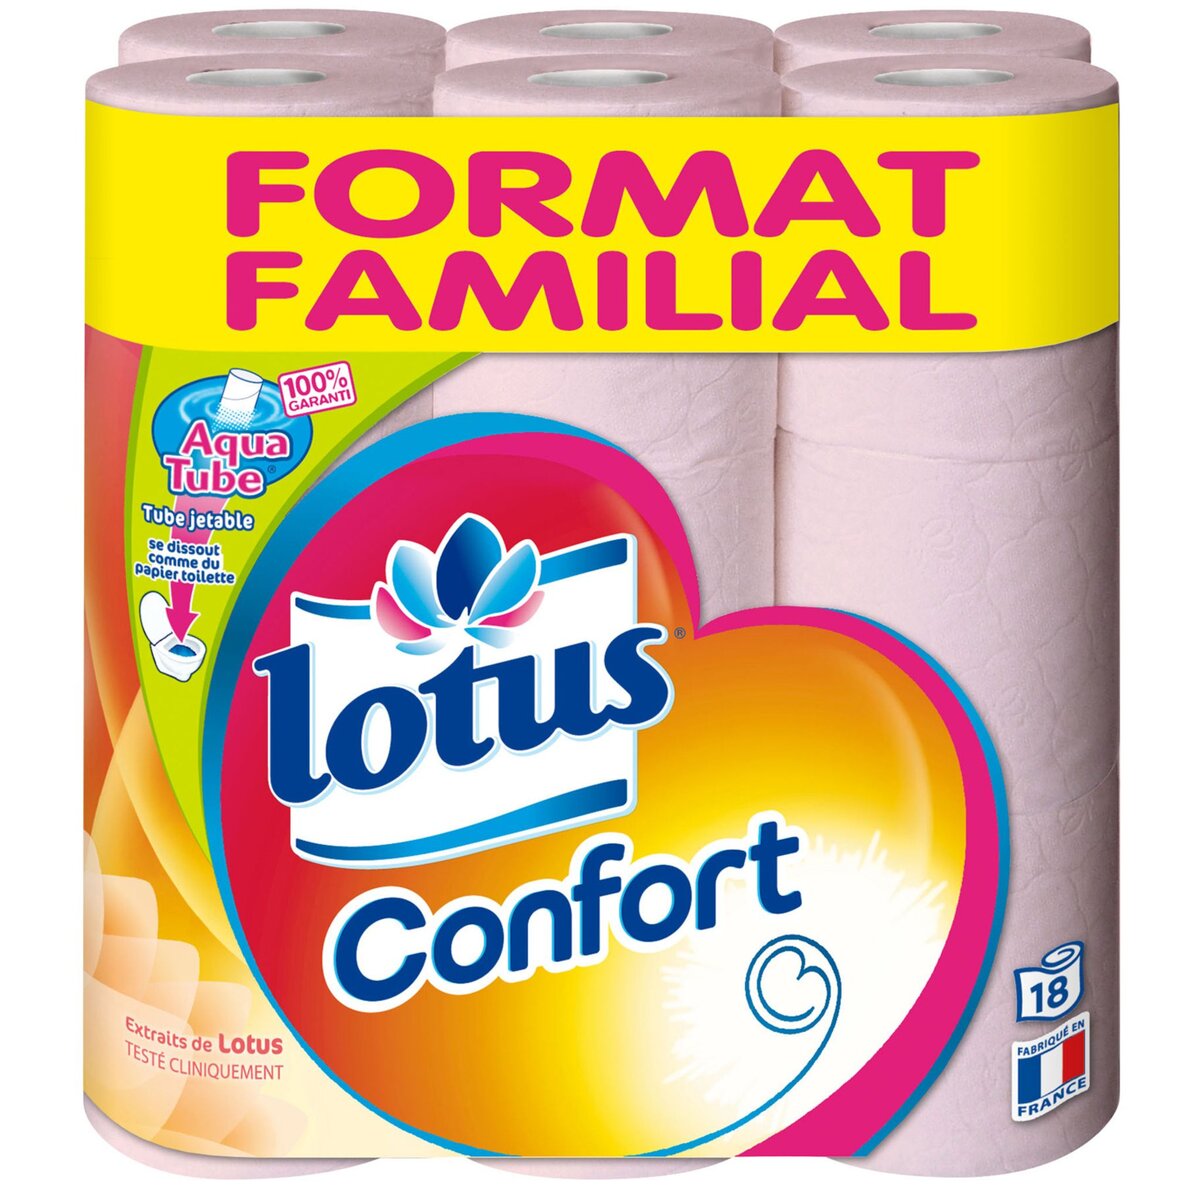 LOTUS Lotus confort papier toilette rose aquatube x18 familial